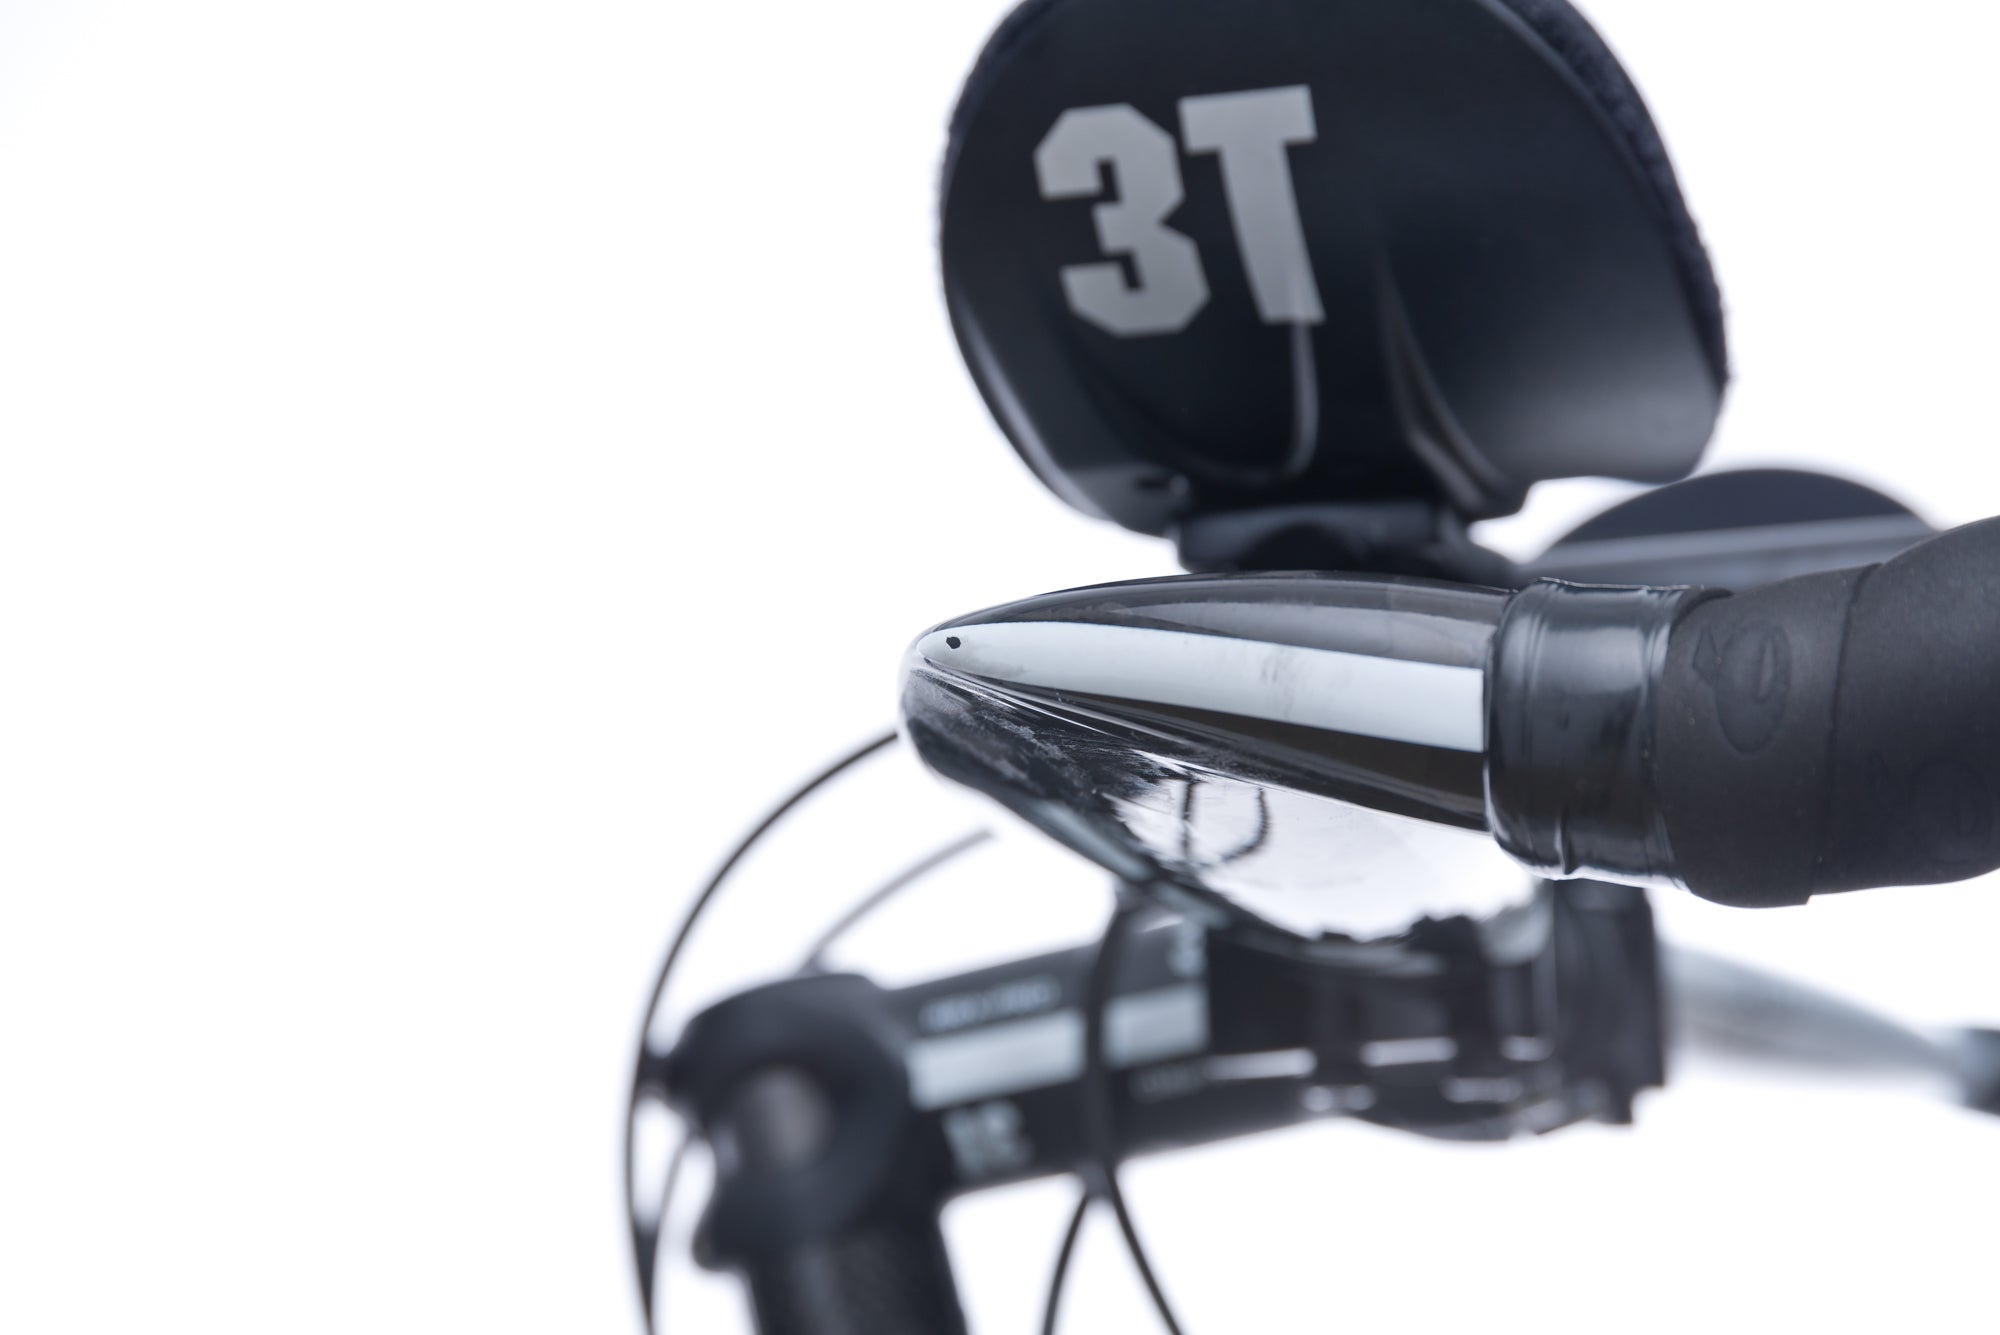 Cervelo P3 Ultegra 58cm Bike - 2015 crank